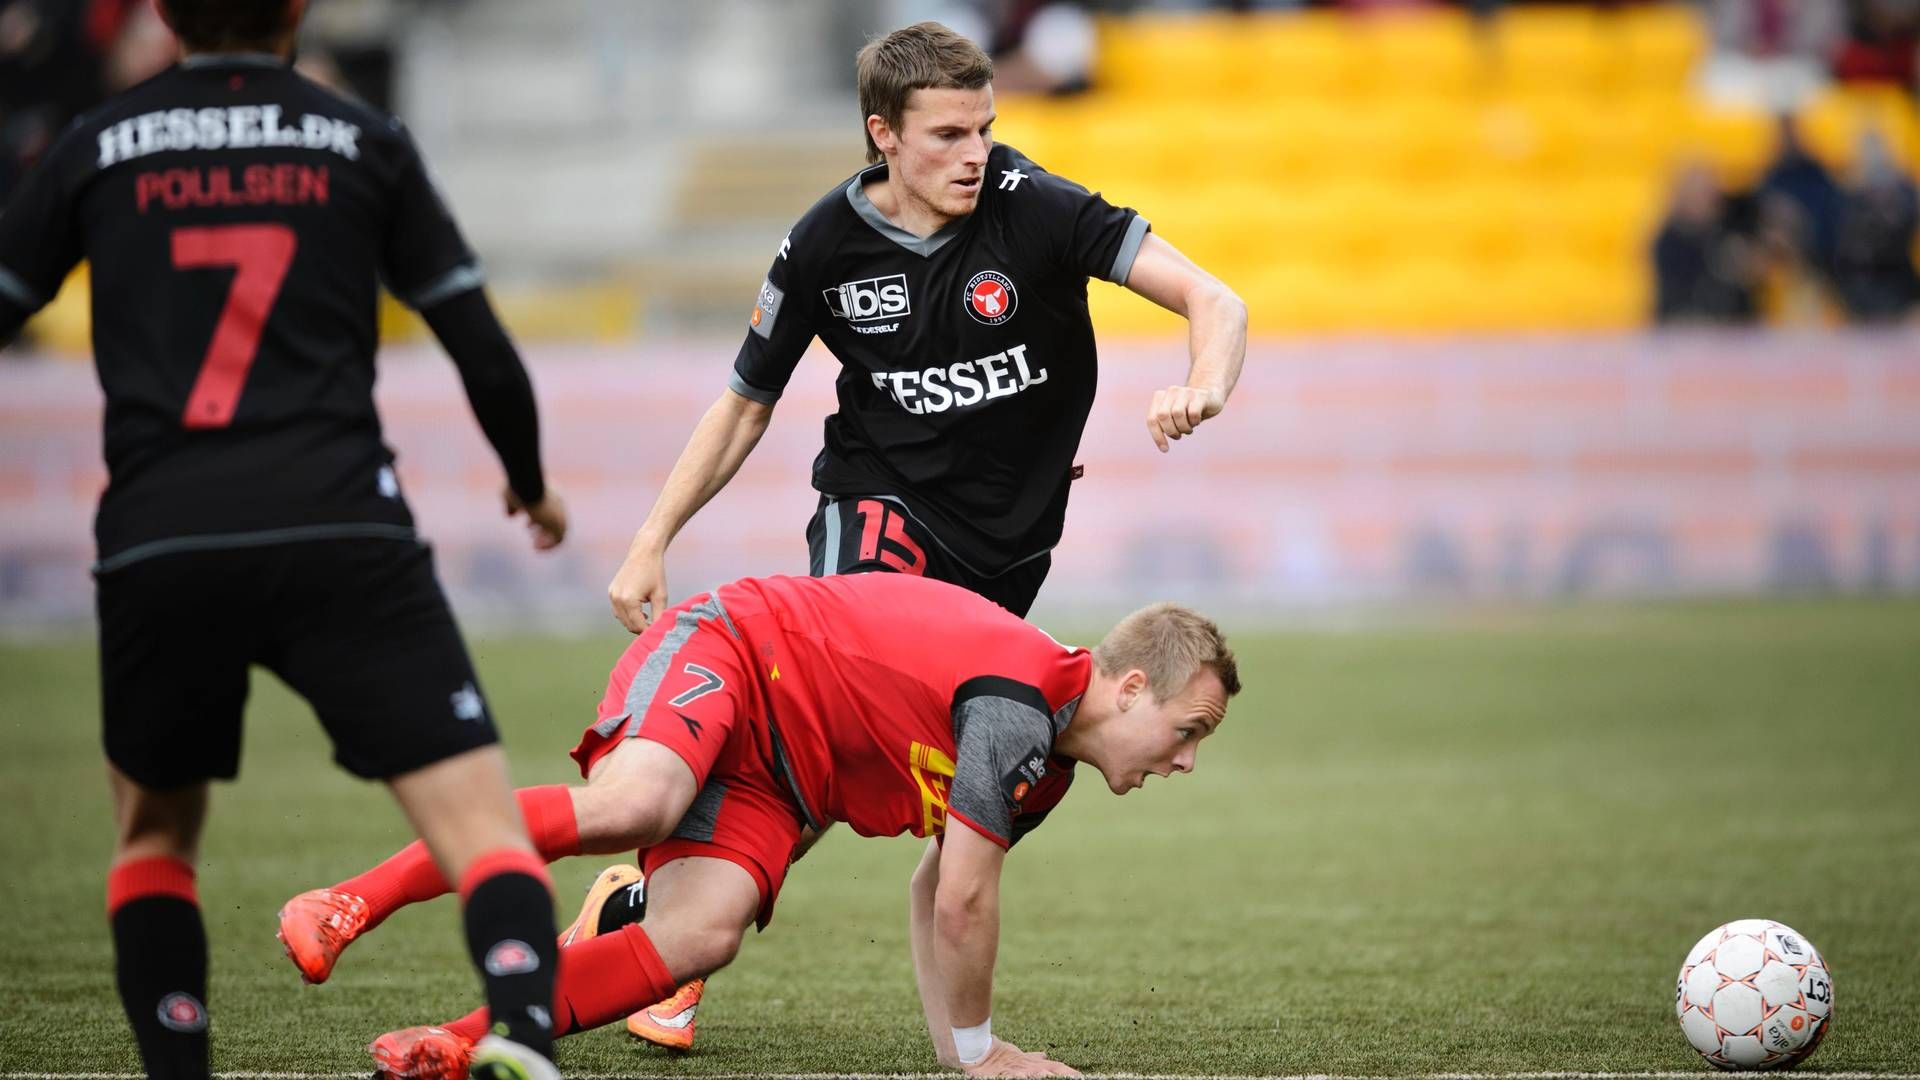 Spillerne fra FC Midtjylland, i sorte trøjer, får snart egen tv-kanal. | Foto: Davali Philip/Polfoto